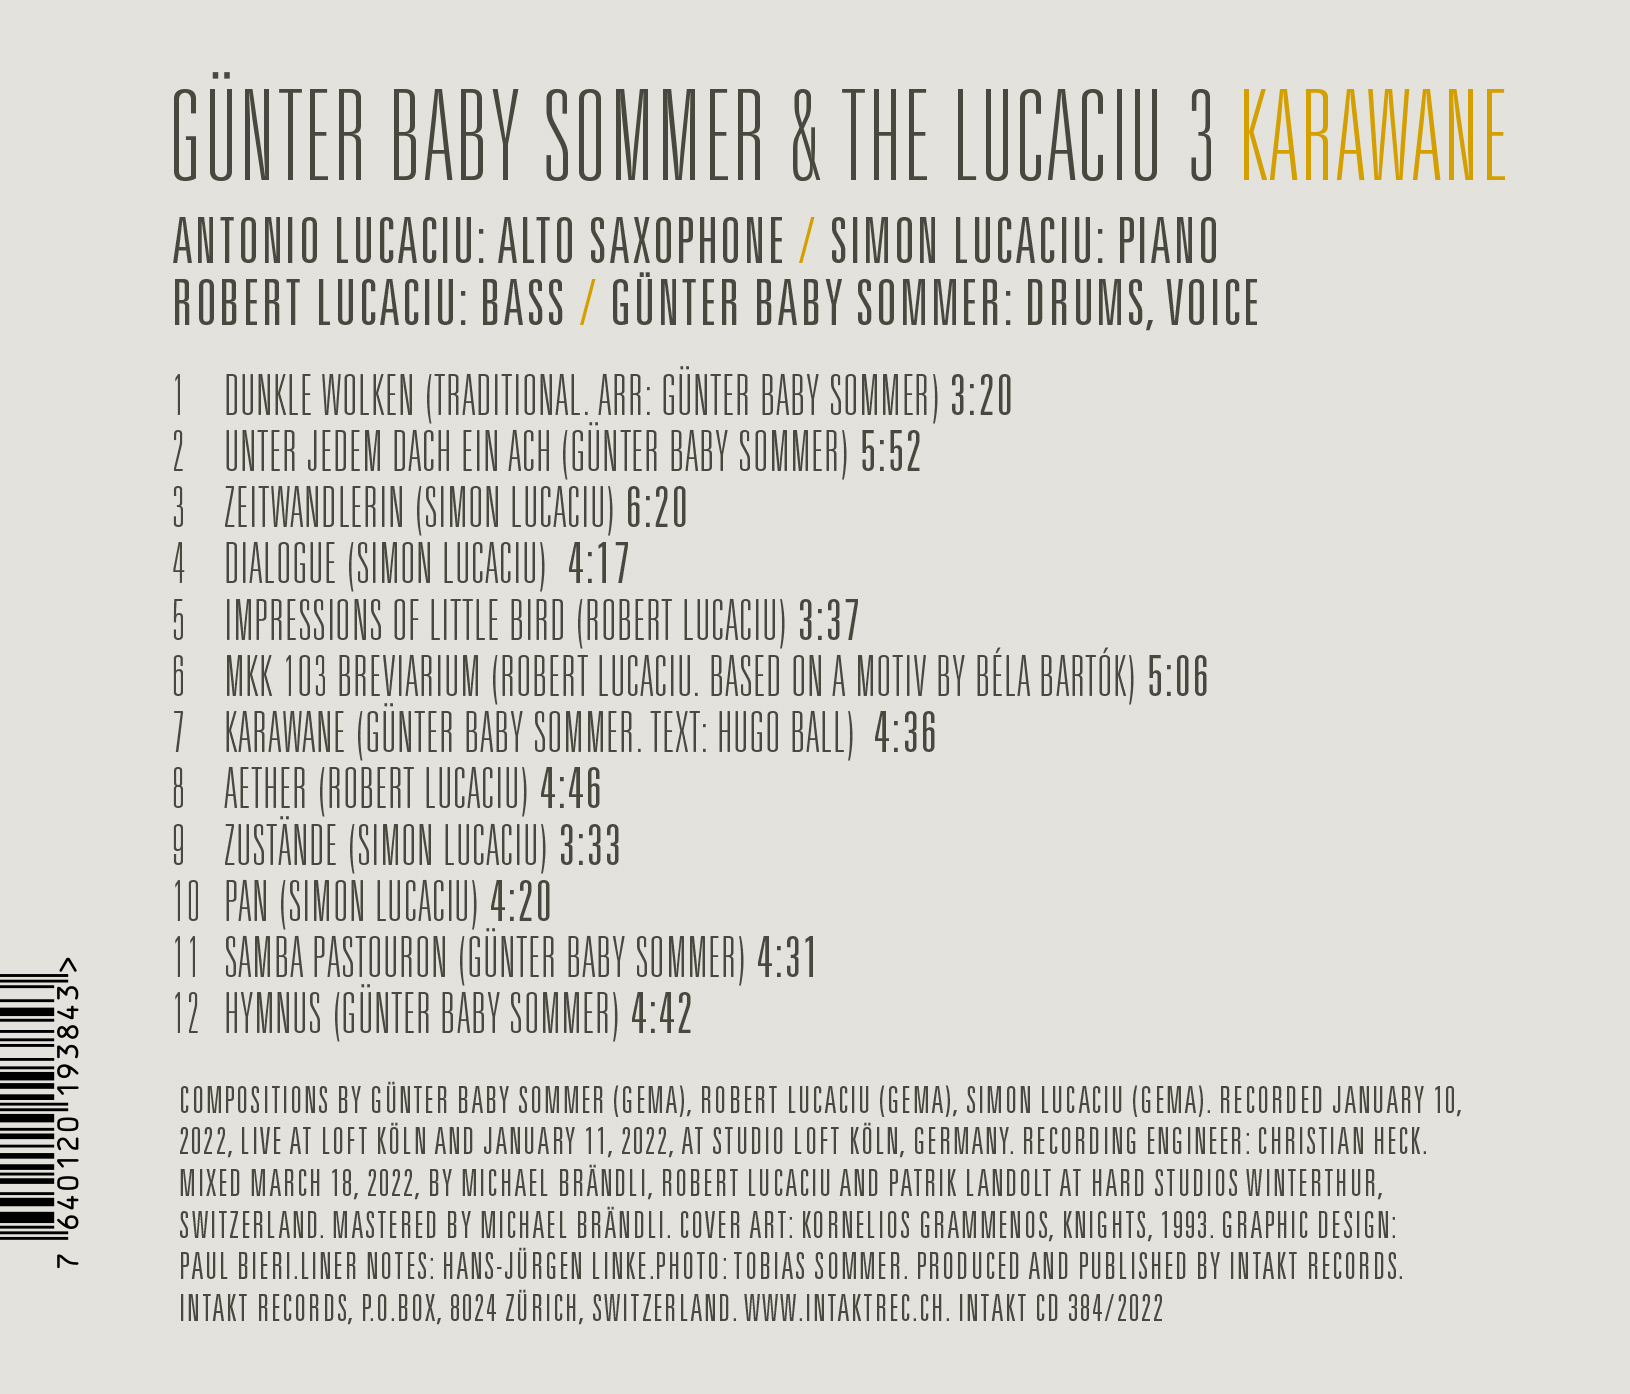 FGÜNTER BABY SOMMER & THE LUCACIU 3 - KARAWANE. INTAKT CD 384 back cover